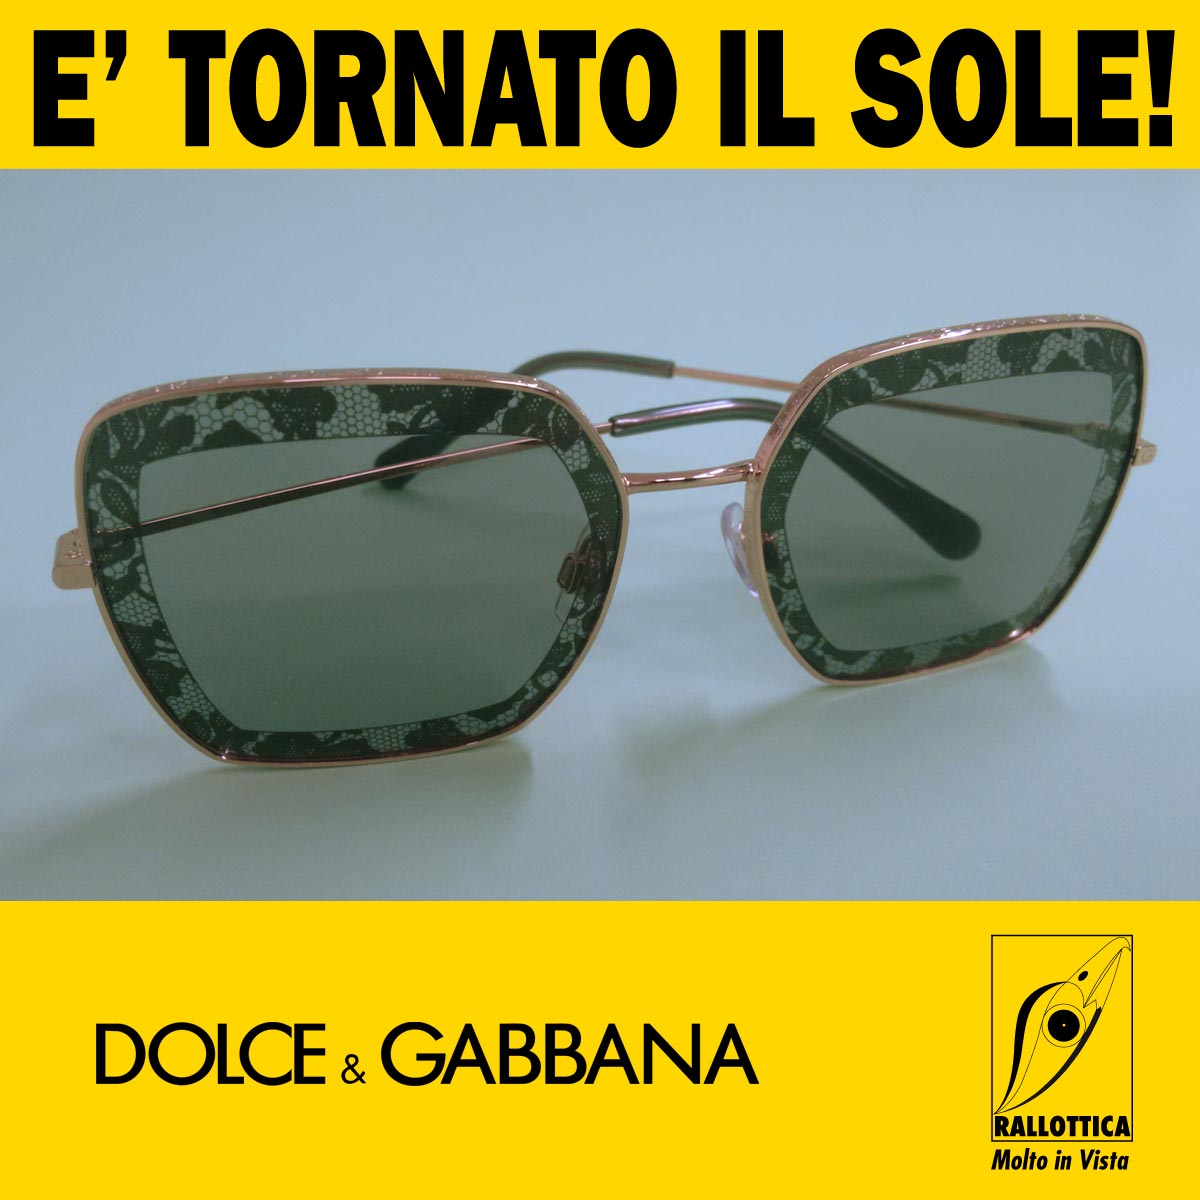 Dolce & Gabbana Sole